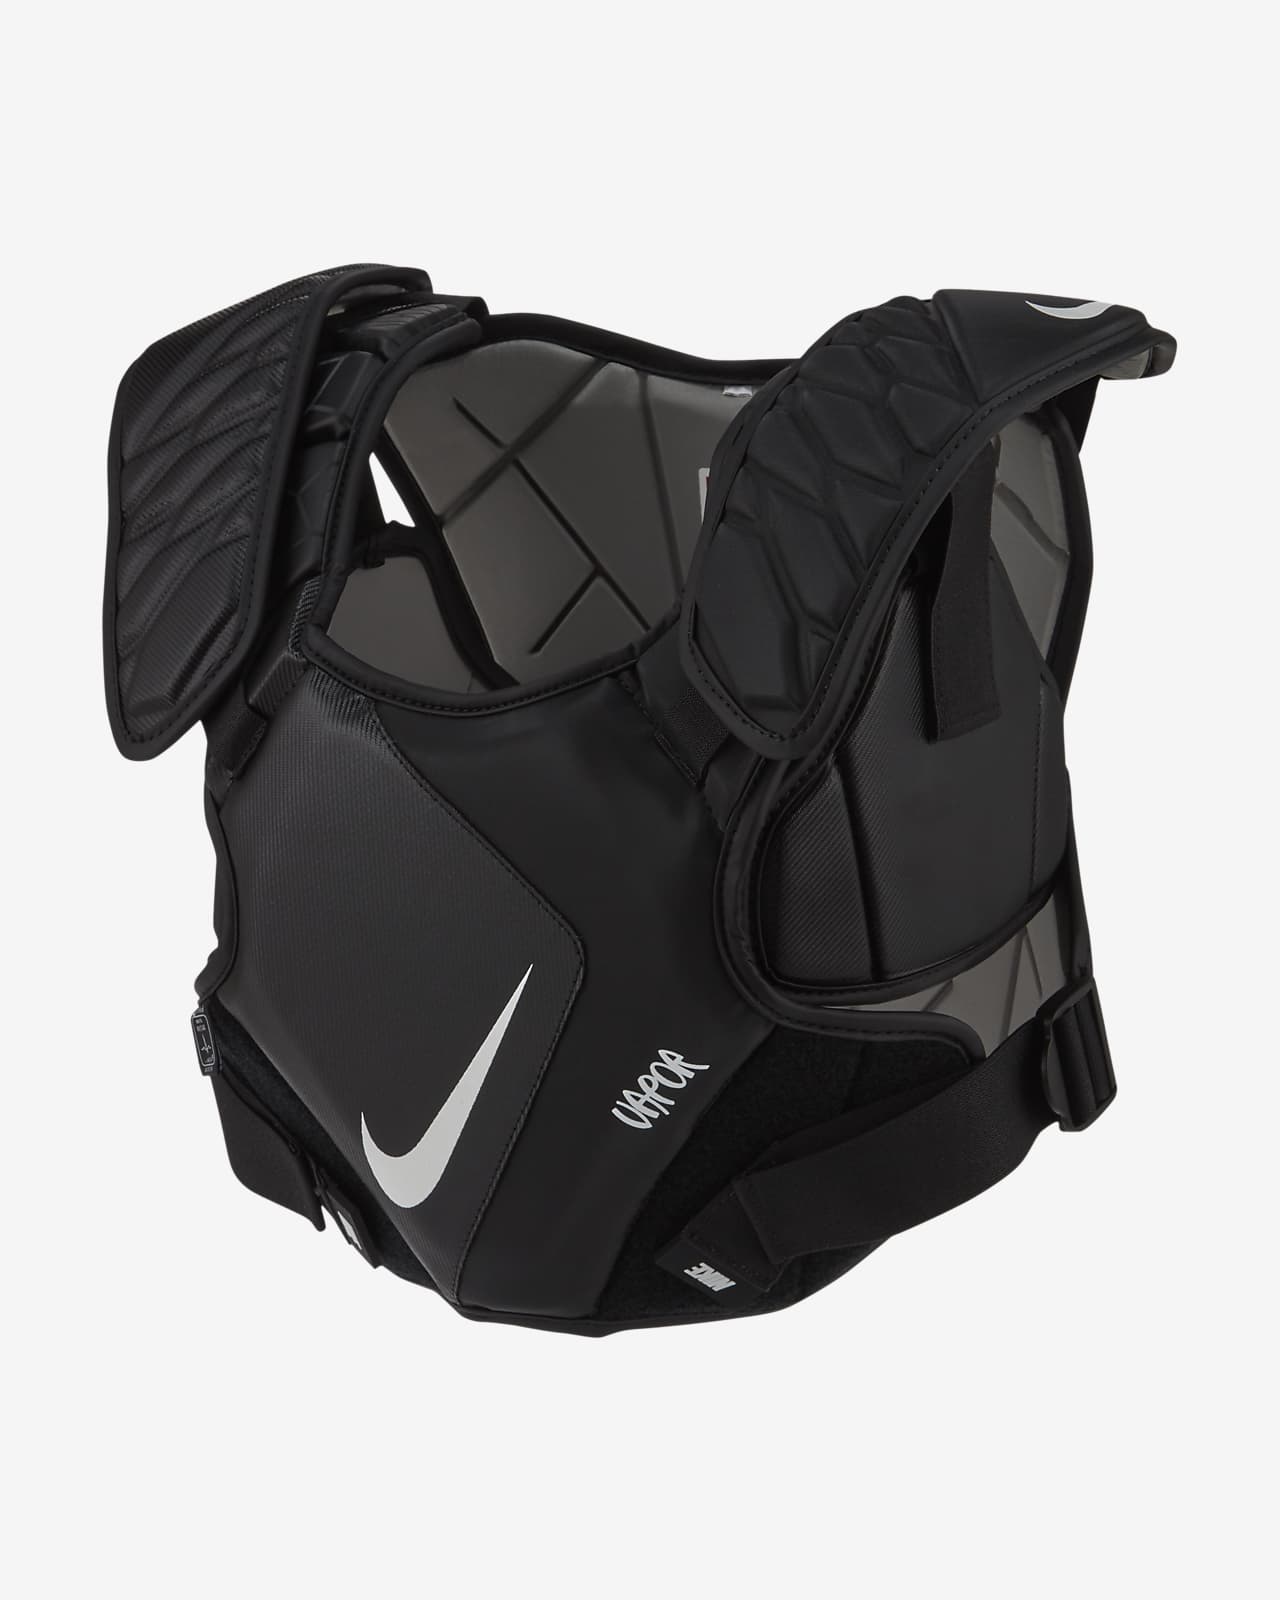 Nike Vapor Lacrosse Shoulder Pads. Nike.com